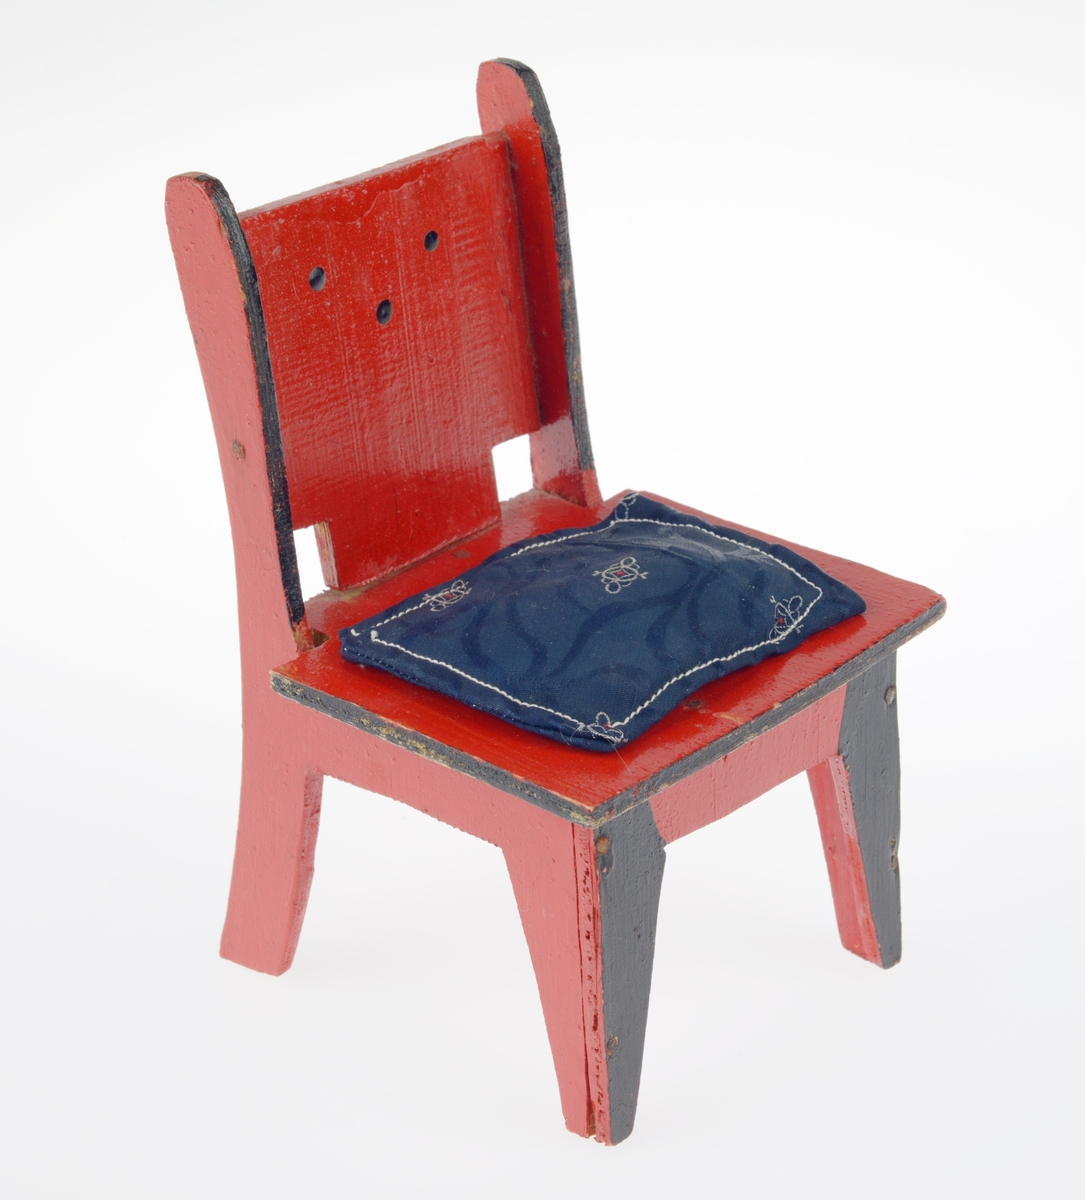 Et dukkemøblement bestående av bord (FTT.54416.01), en benk med pute (FTT.54416.02) og to stoler med puter (FTT.54416.03 og FTT.54416.04). Alle møblene er laget av kryssfiner. Bordet er firkantet og er malt rødt med en svart stripe langs kanten. Benken er også firkantet. Armlenene er avrundet og noe kortere enn setet. I ryggen er det skjært ut tre firkanter. Benken er rødmalt med svarte kanter. Fronten på beina er også svartmalt. I ryggen er det malt seks prikker som utgjør to trekanter. Til benken hører det til en pute sydd av ullstoff. Den er dekorert med broderi, antageligvis gjort av et barn. Stolene er også firkantete. I ryggen er det skjært ut to firkanter. Stolene er rødmalte med svarte kanter, og fronten på stolbeina er også svartmalt. I ryggen er det malt tre prikker som utgjør en trekant. Til den ene stolen hører det til en pute sydd av ullstoff. den er dekorert med en brodert sommerfugl. Til den andre stolen er det en pute sydd av kunstig silkestoff. Ullputene er hvite med rød dekor. Den siste puten et blå med mønster i hvitt og rødt.